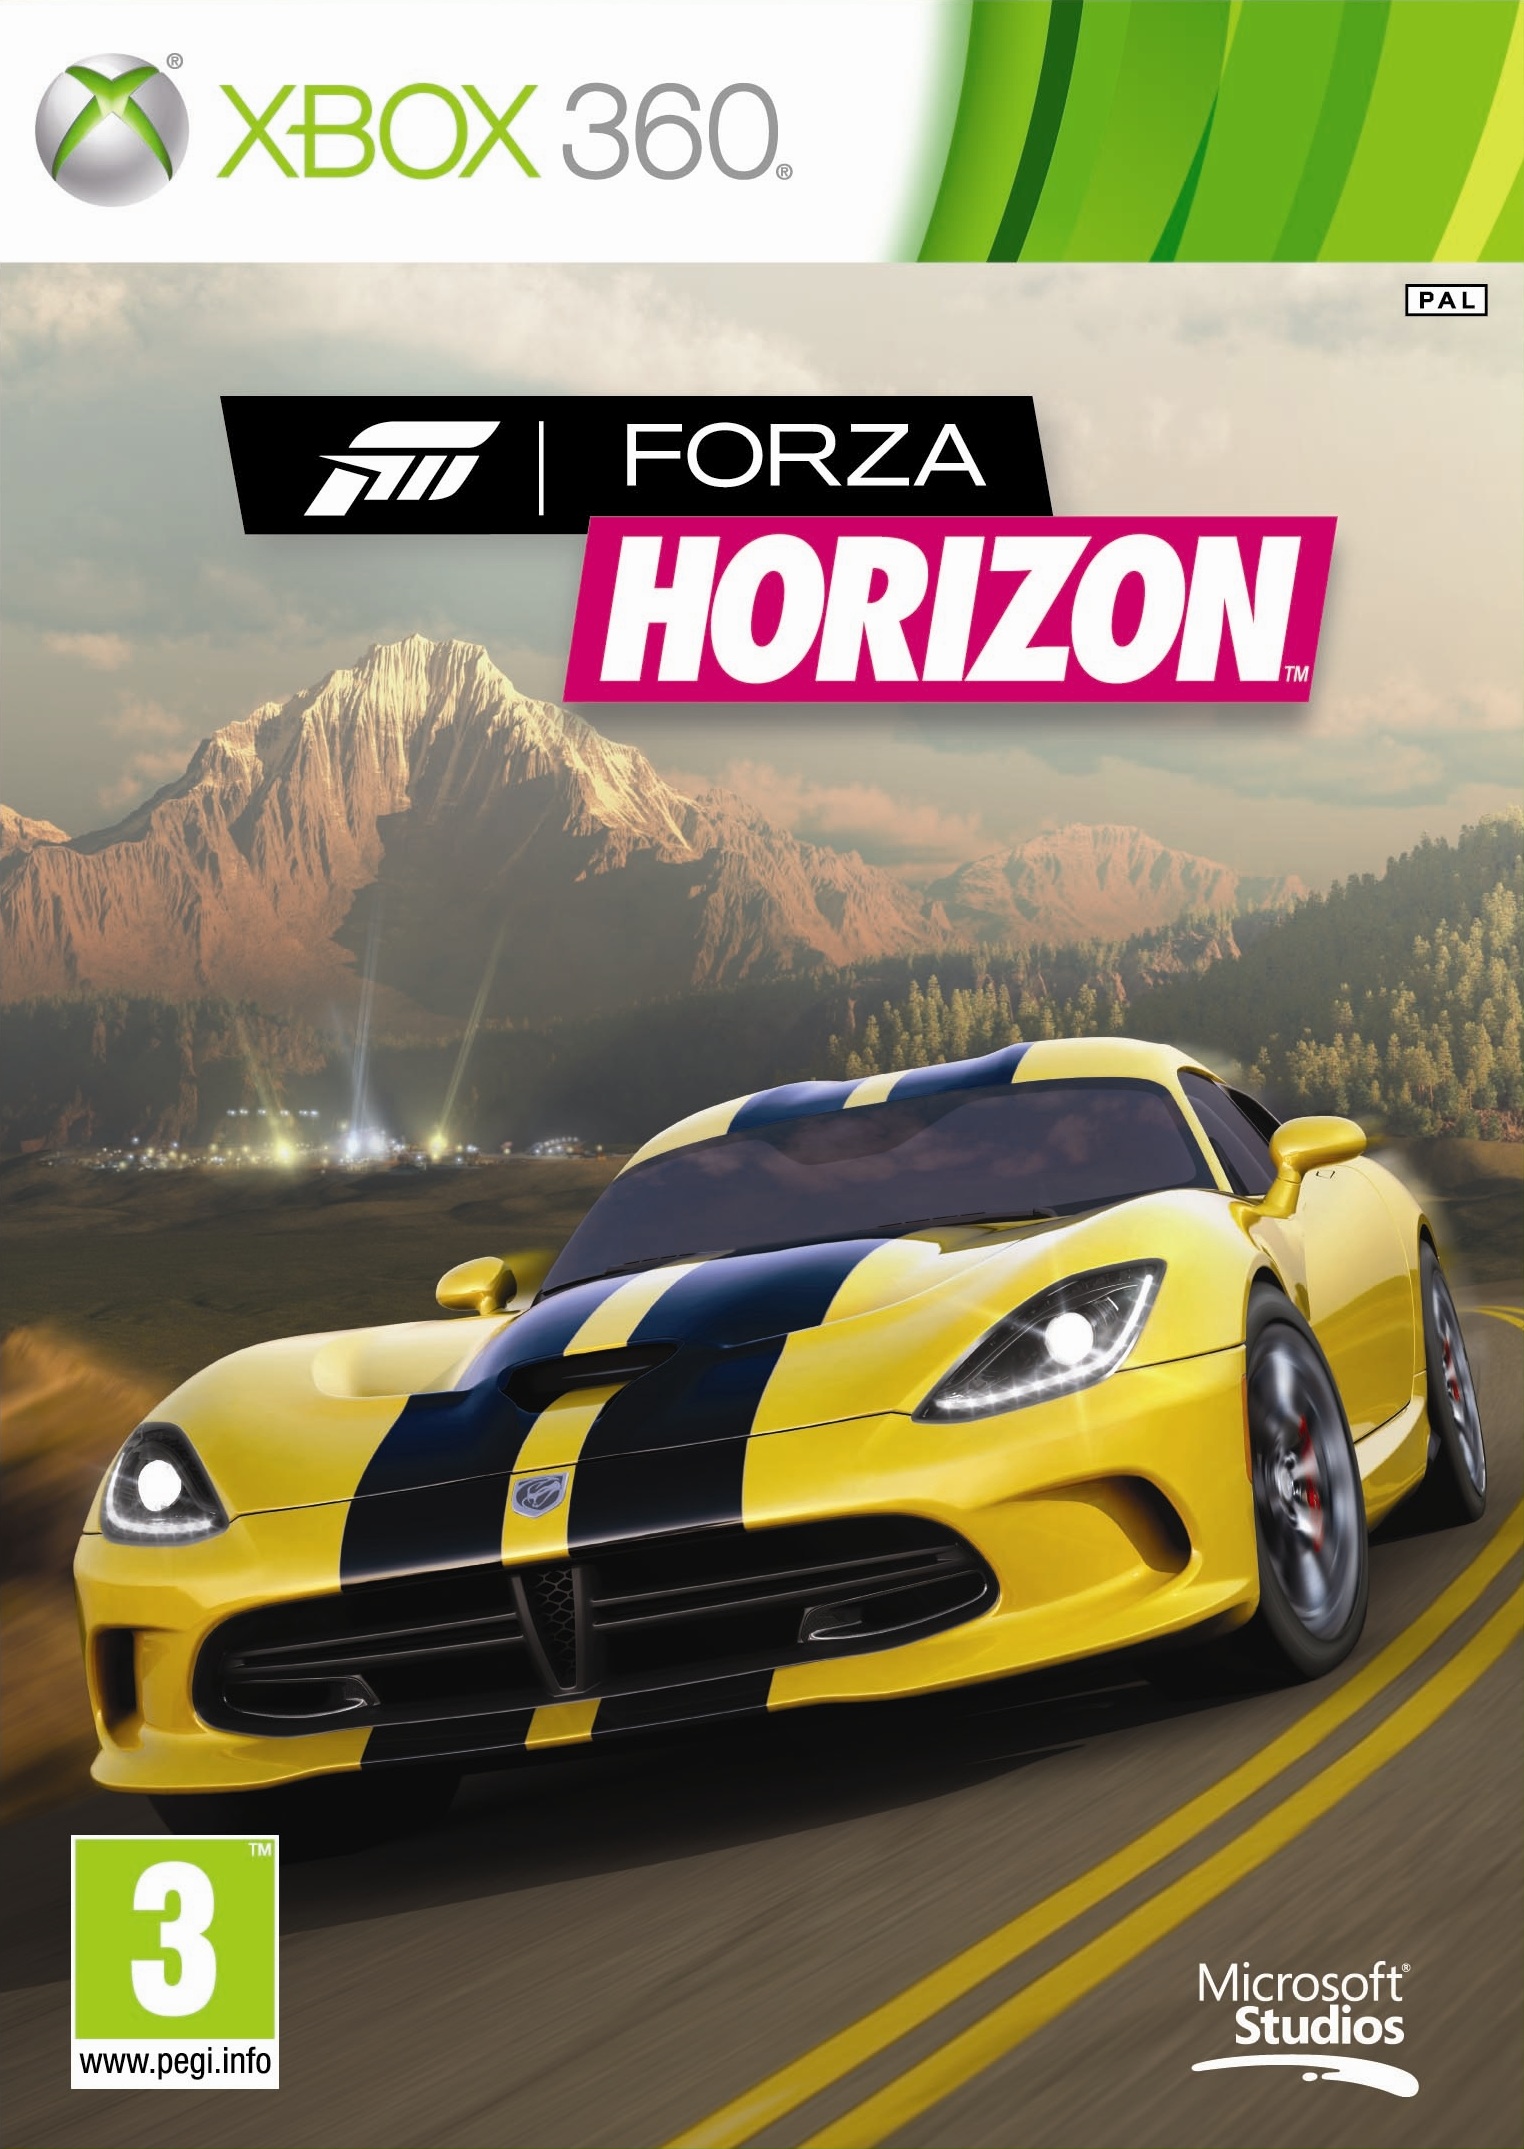 XBOX 360 - Forza Horizon